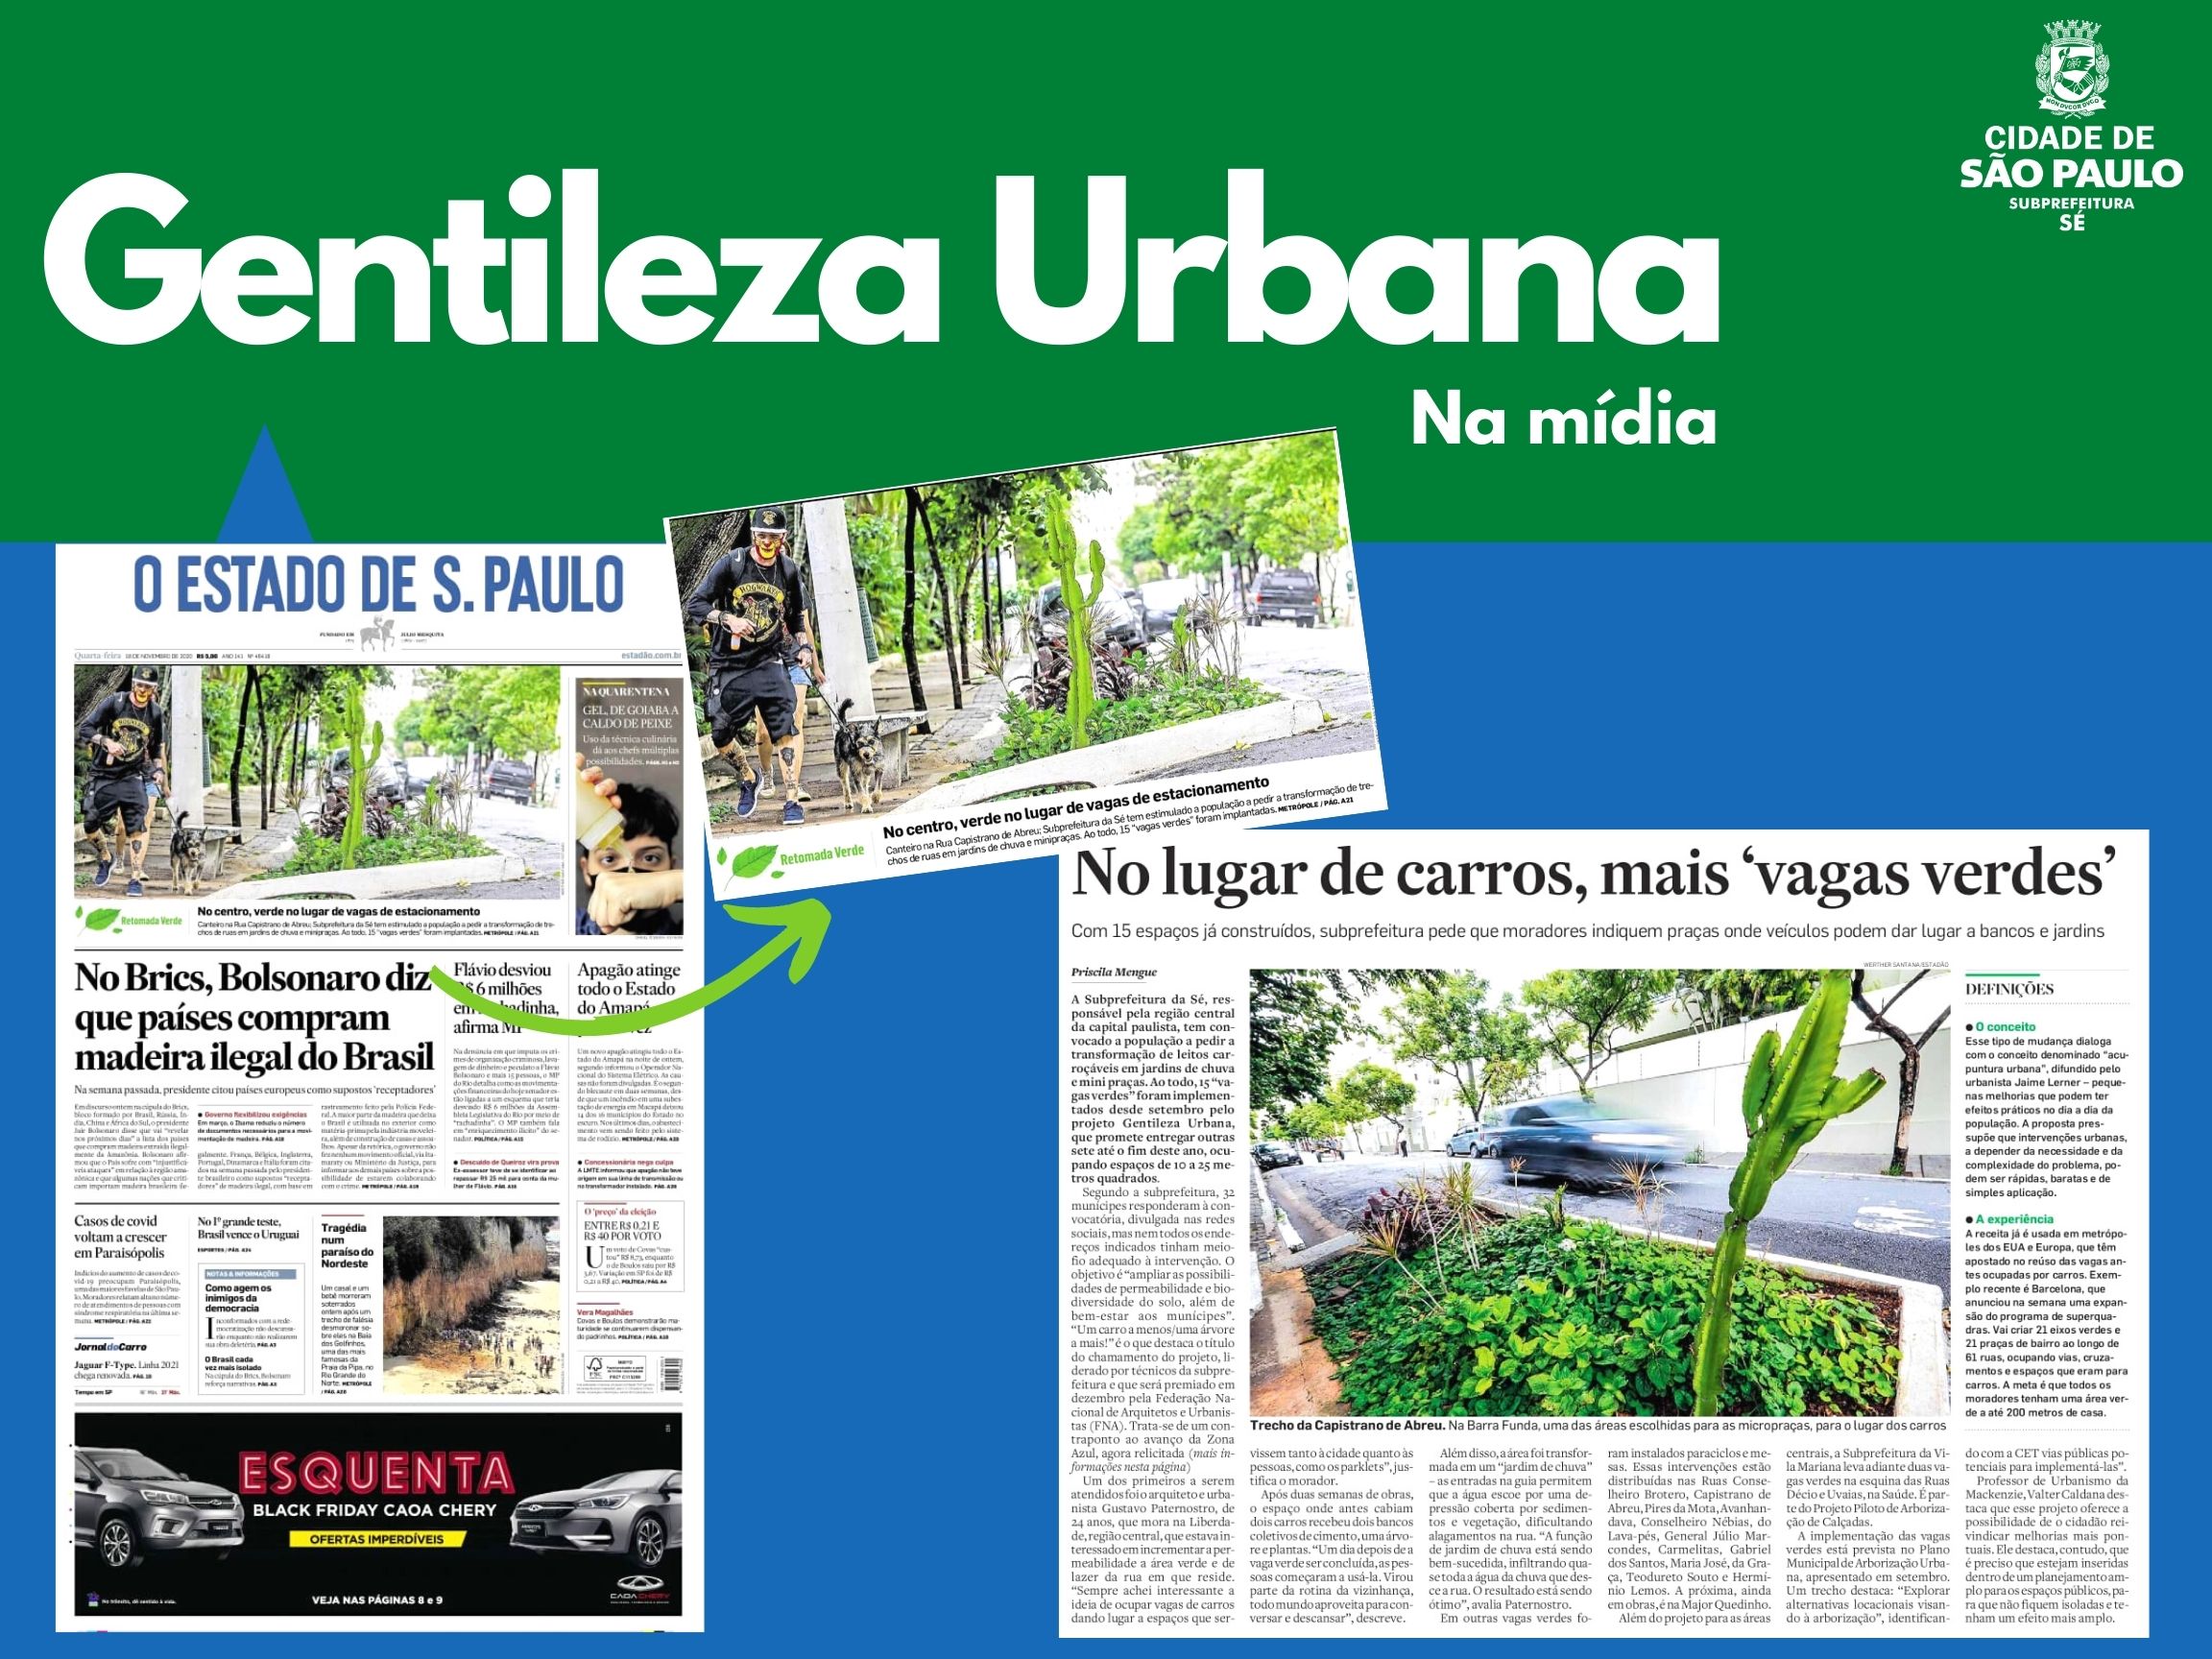 Arte escrito Gentileza Urbana com o logotipo da subprefeitura Sé mostra capa do jornal Estado de S.Paulo sobre vagas verdes